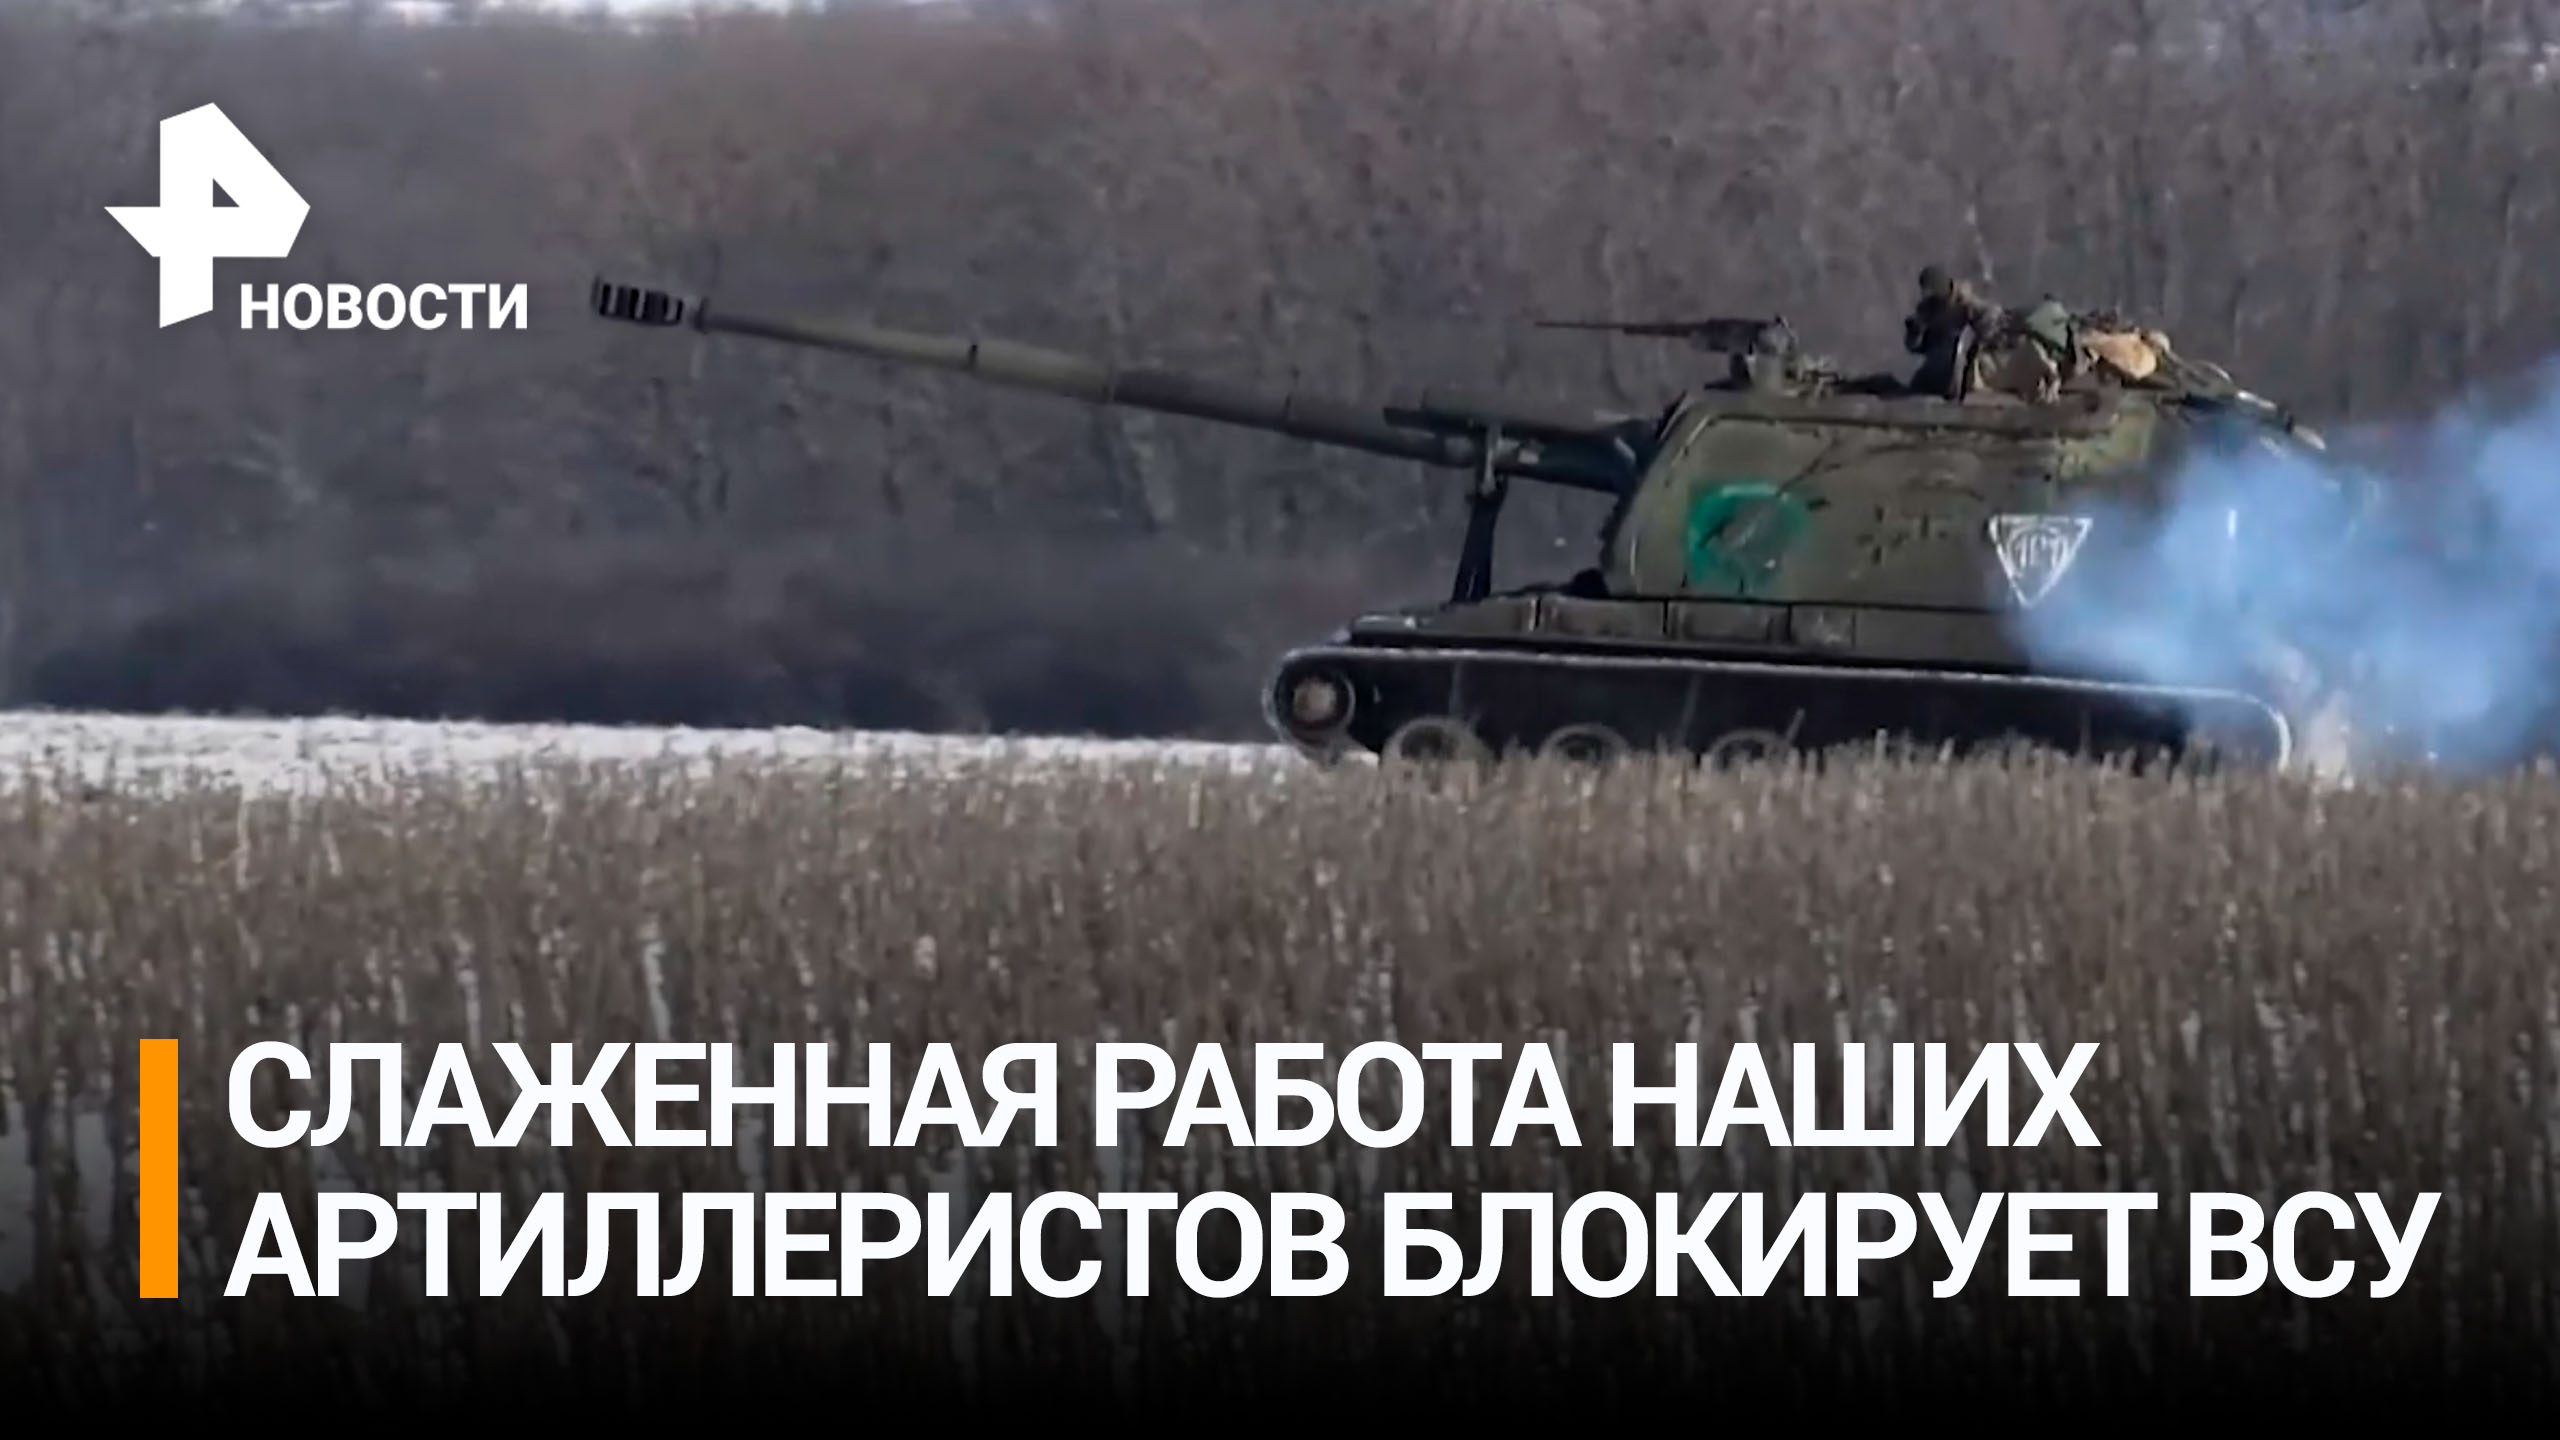 Артиллеристы уничтожили позиции ВСУ в ЛНР с помощью гаубиц Д-20 / РЕН Новости